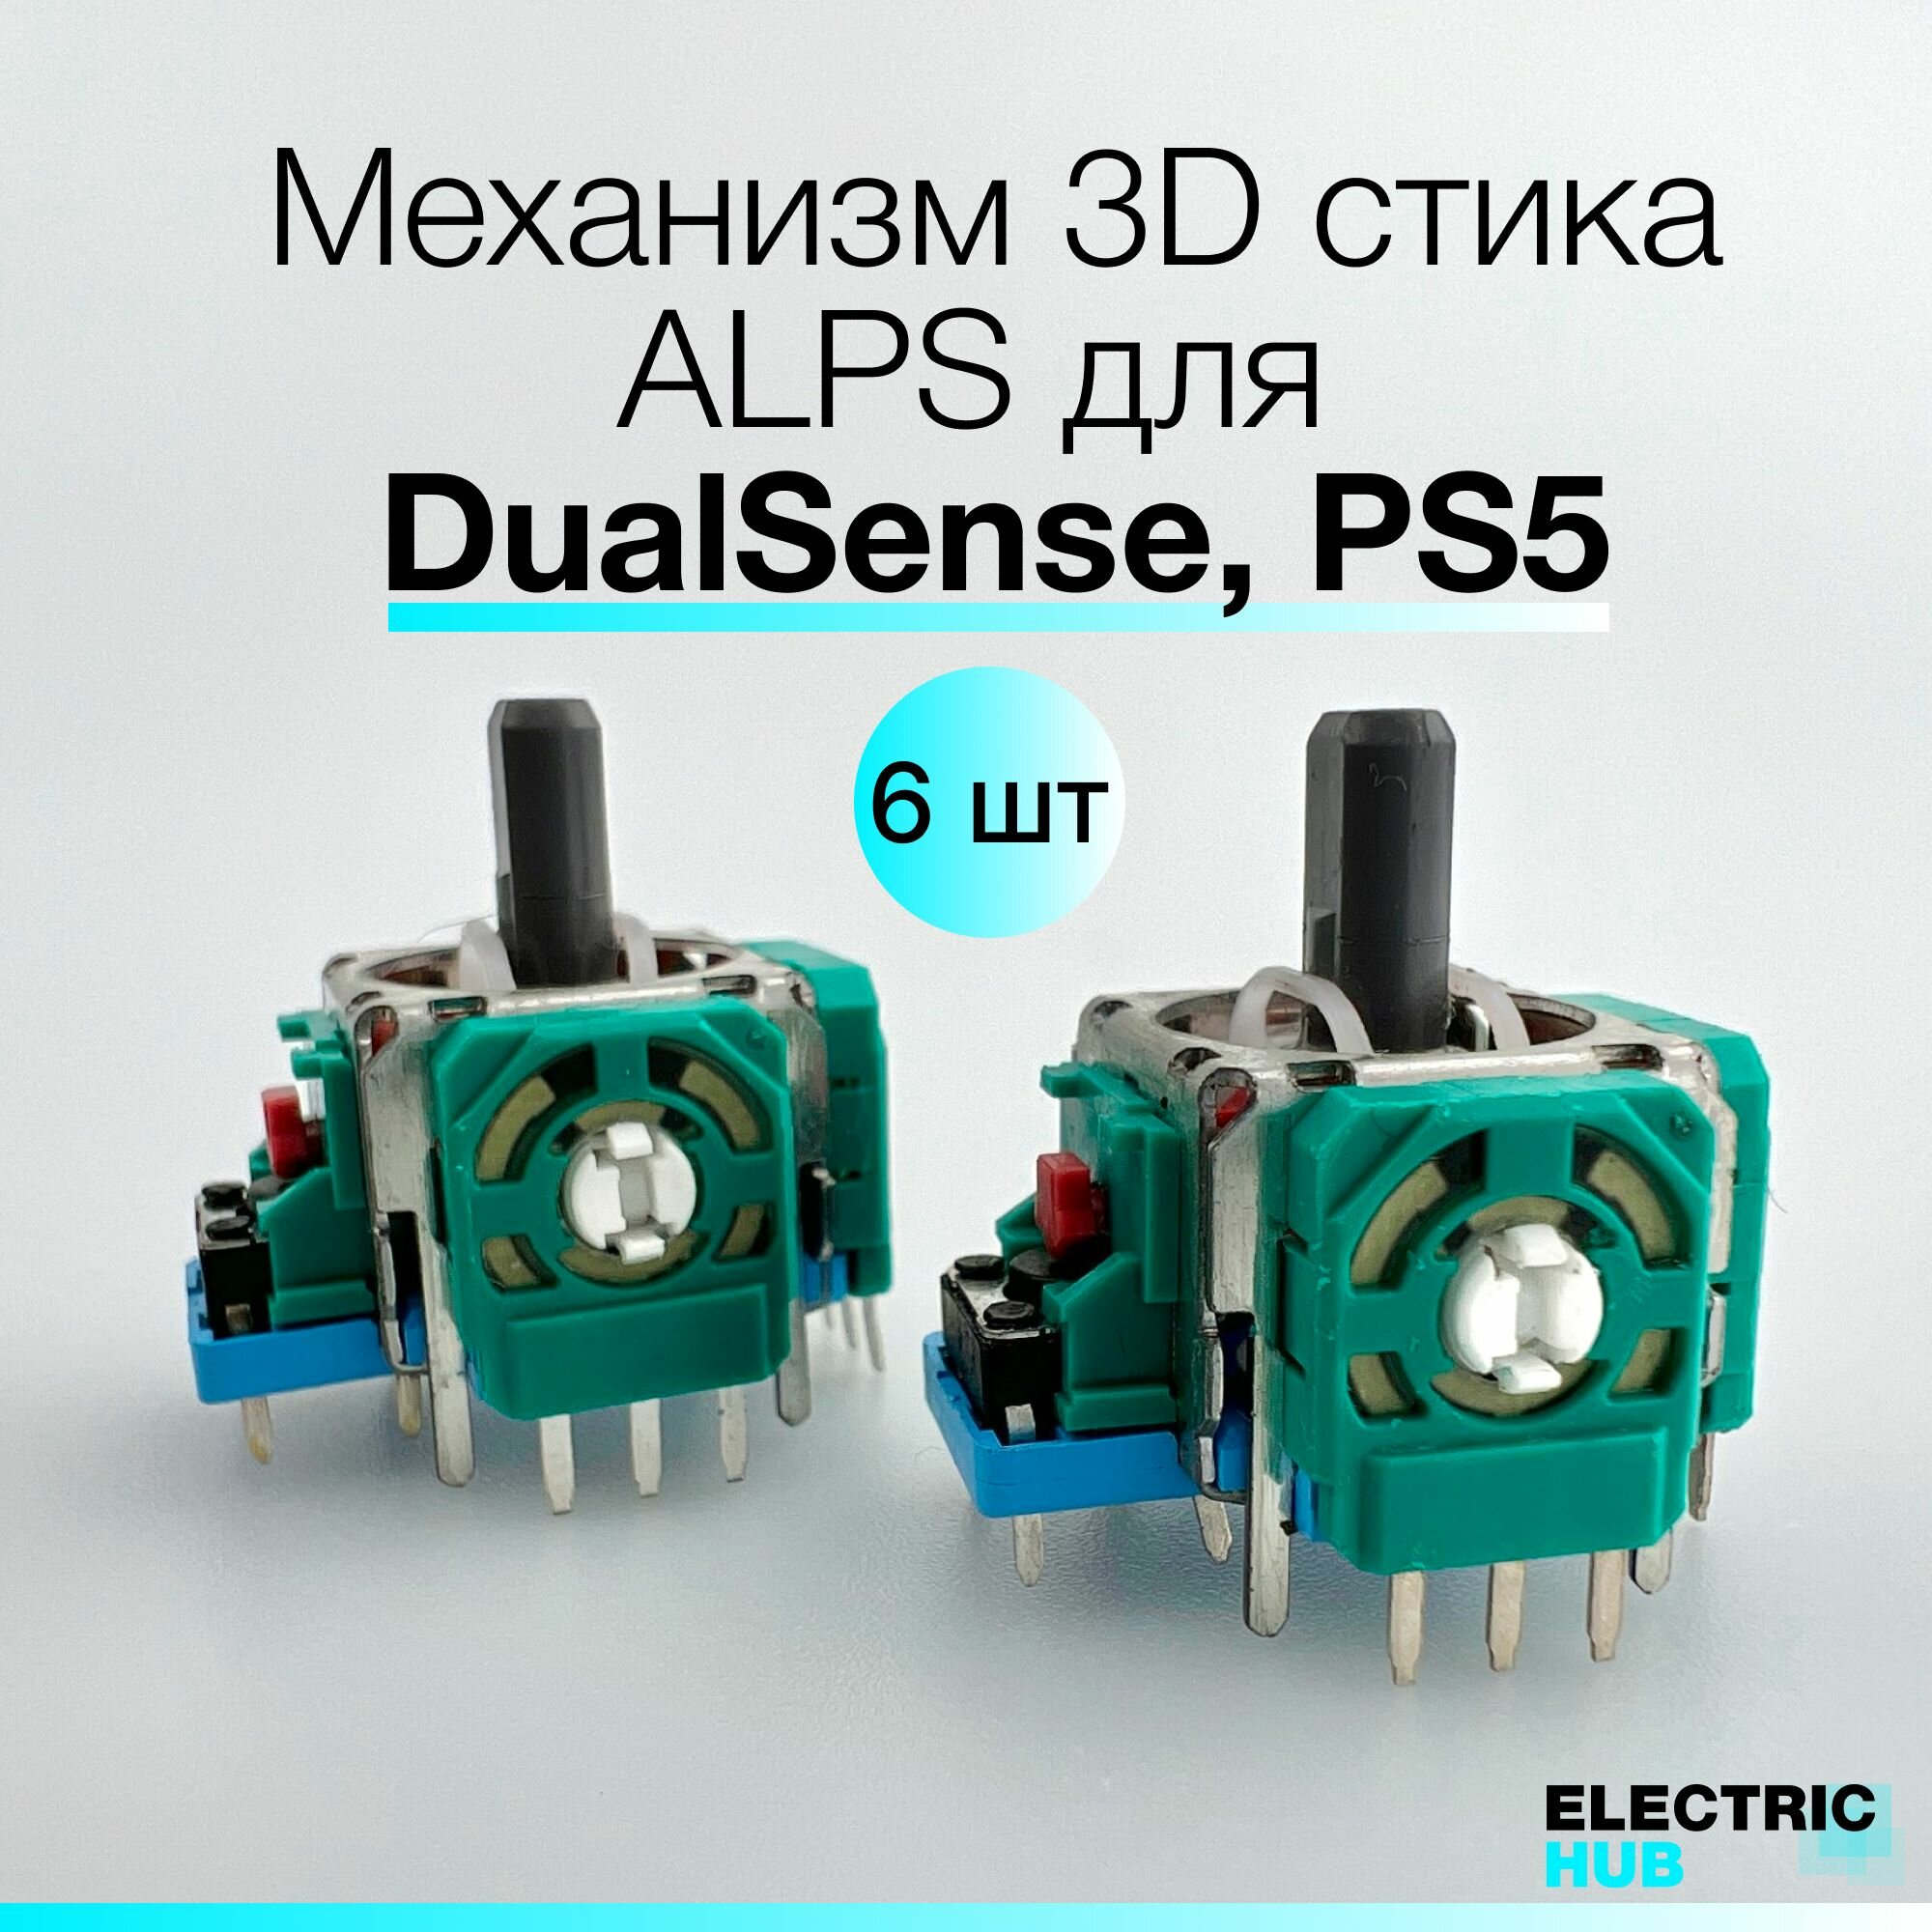 Оригинальный механизм 3D стика ALPS для DualSense, PS5, для ремонта джойстика/геймпада, 6 шт.